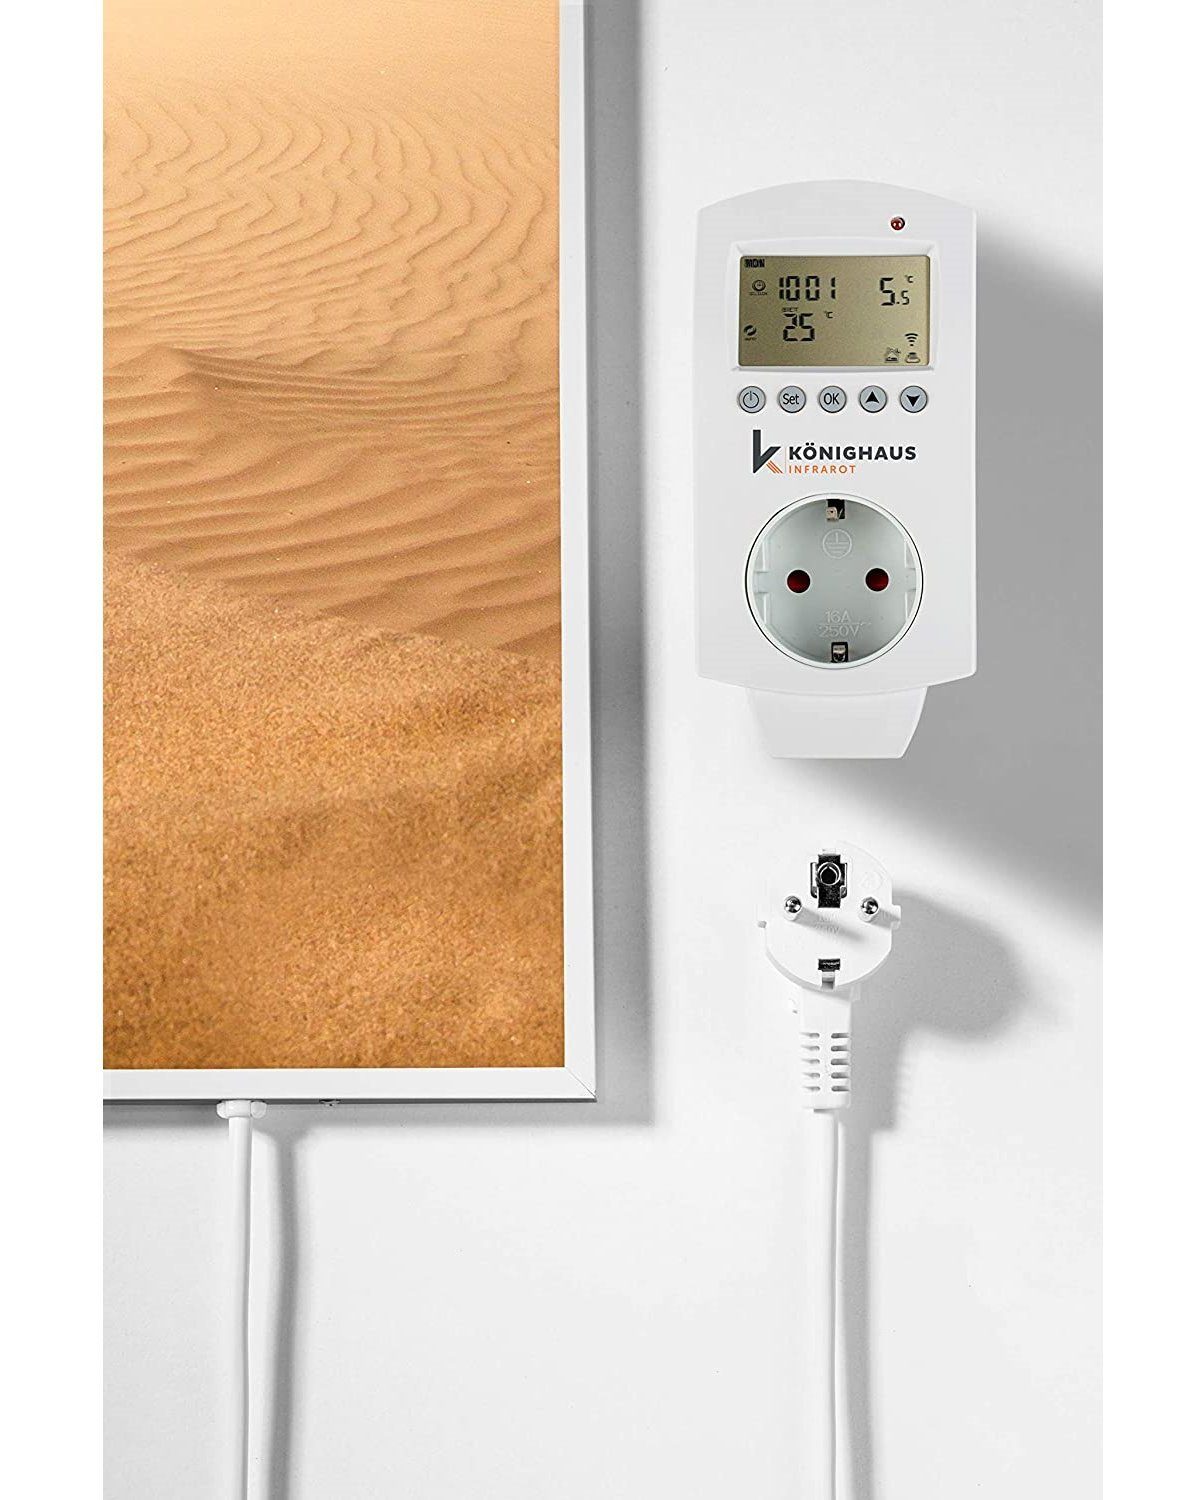 Strahlungswärme, Made Germany, in Wüste Infrarotheizung Bild-Serie Könighaus 1000W Smart, angenehme Home Smart